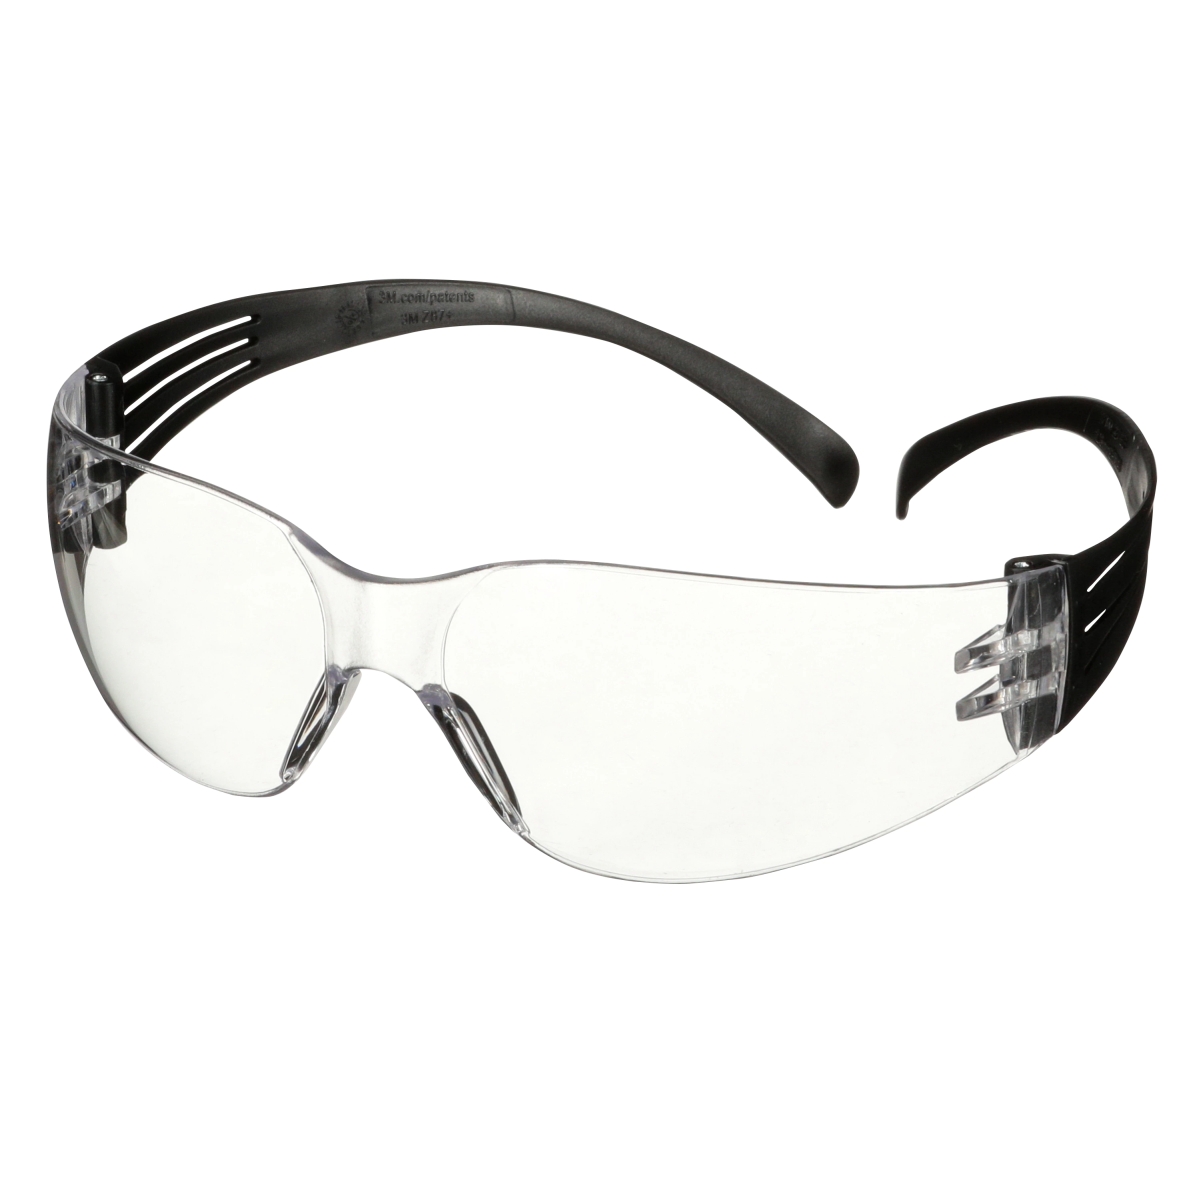 Gafas de protección 3M SecureFit 100, patillas negras, tratamiento antirrayas, lentes transparentes, SF101AS-BLK